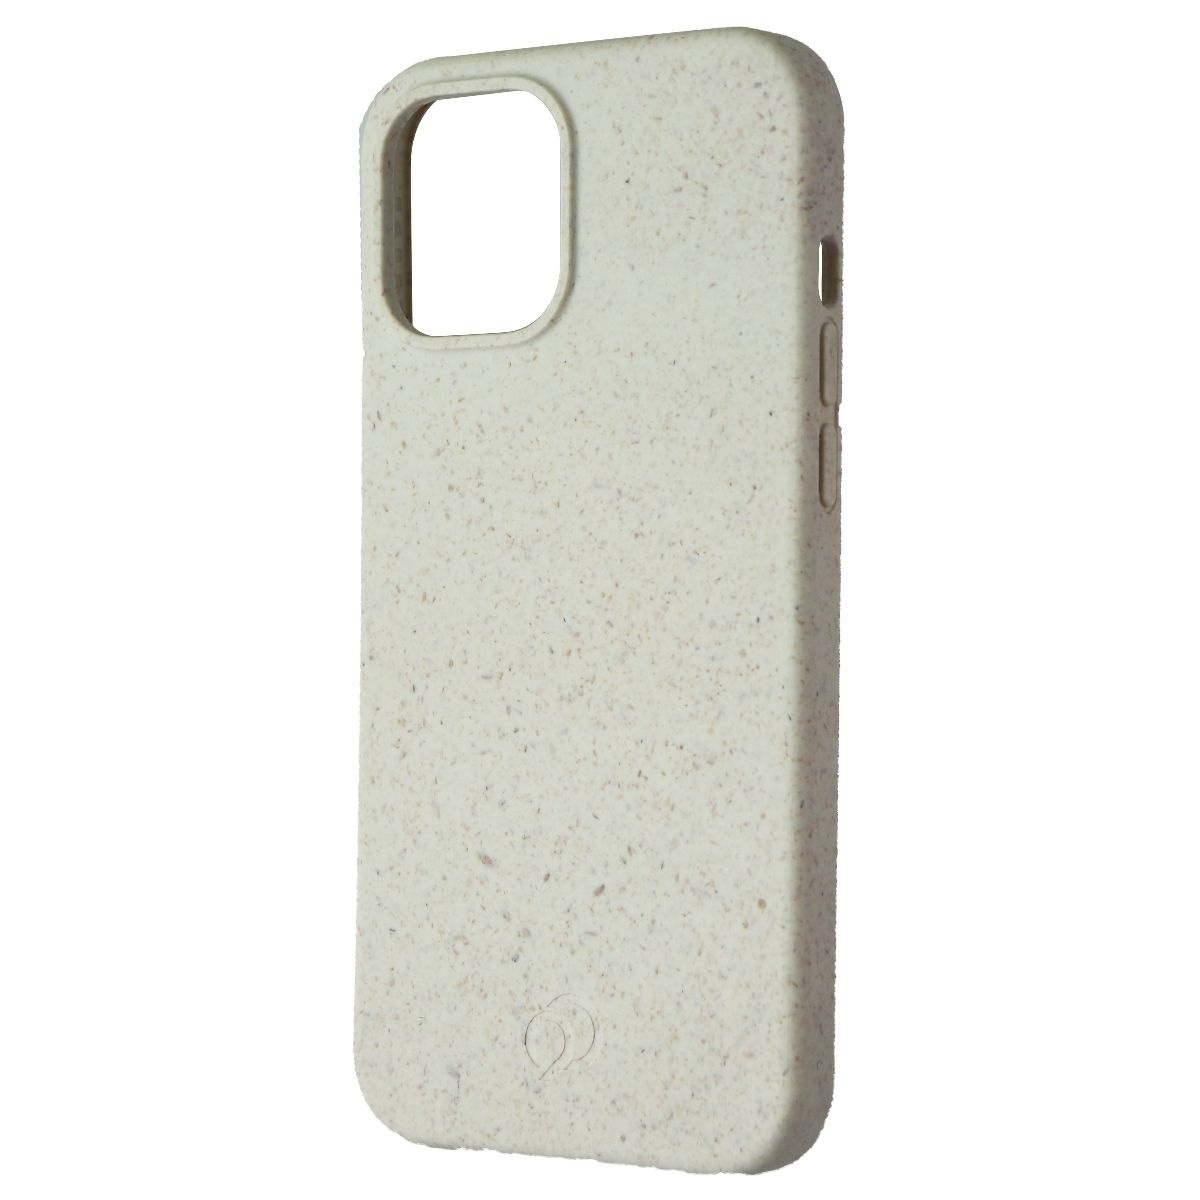 Nimbus9 Vega Biodegradable Case Sandstone For IPhone 12 Pro Max Cases